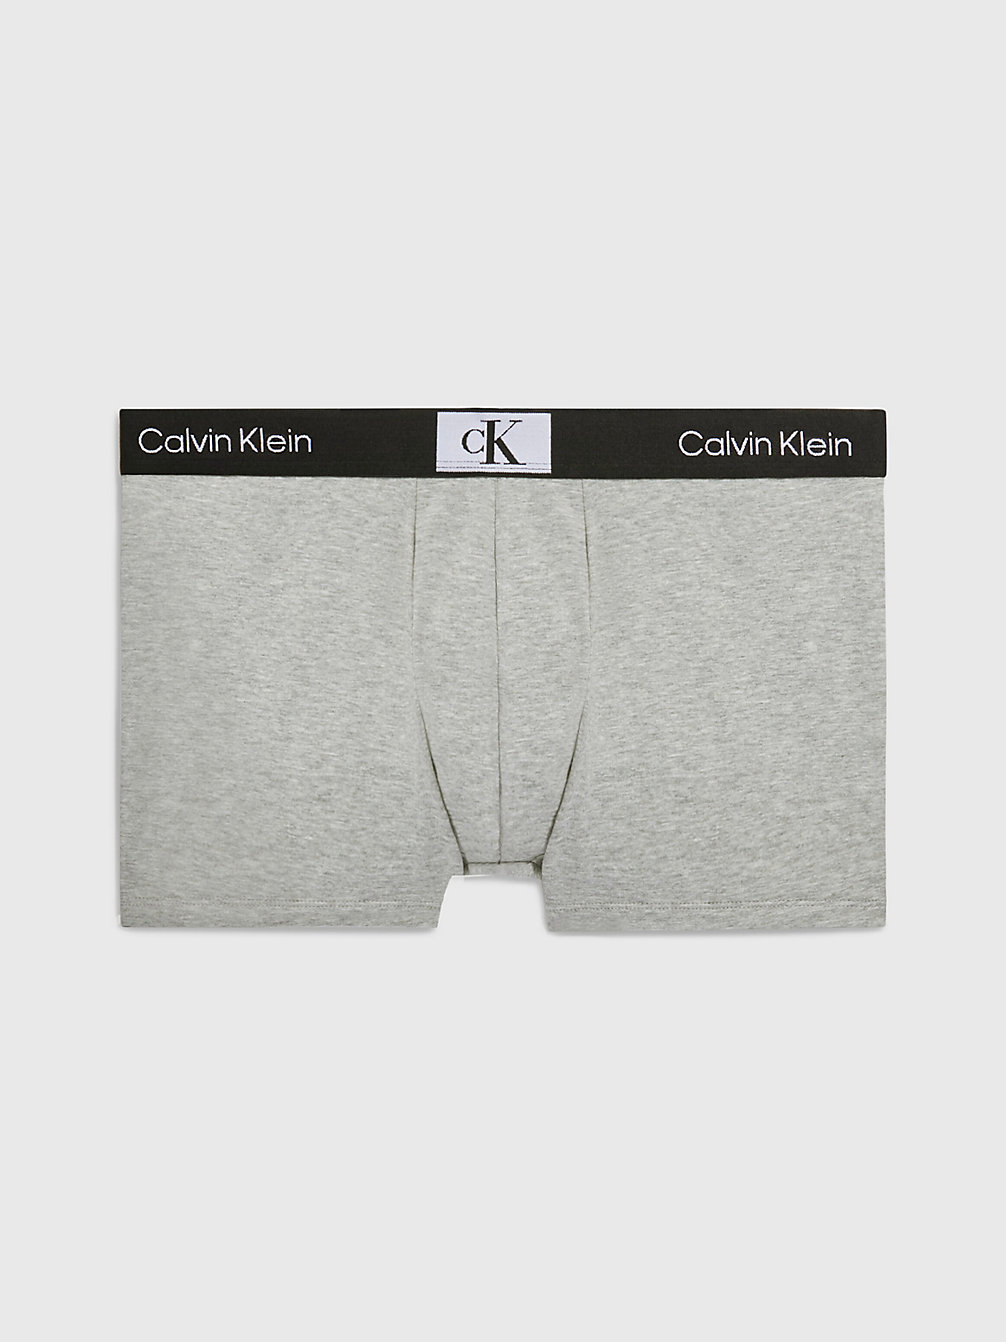 GREY HEATHER Shorts - Ck96 undefined Herren Calvin Klein